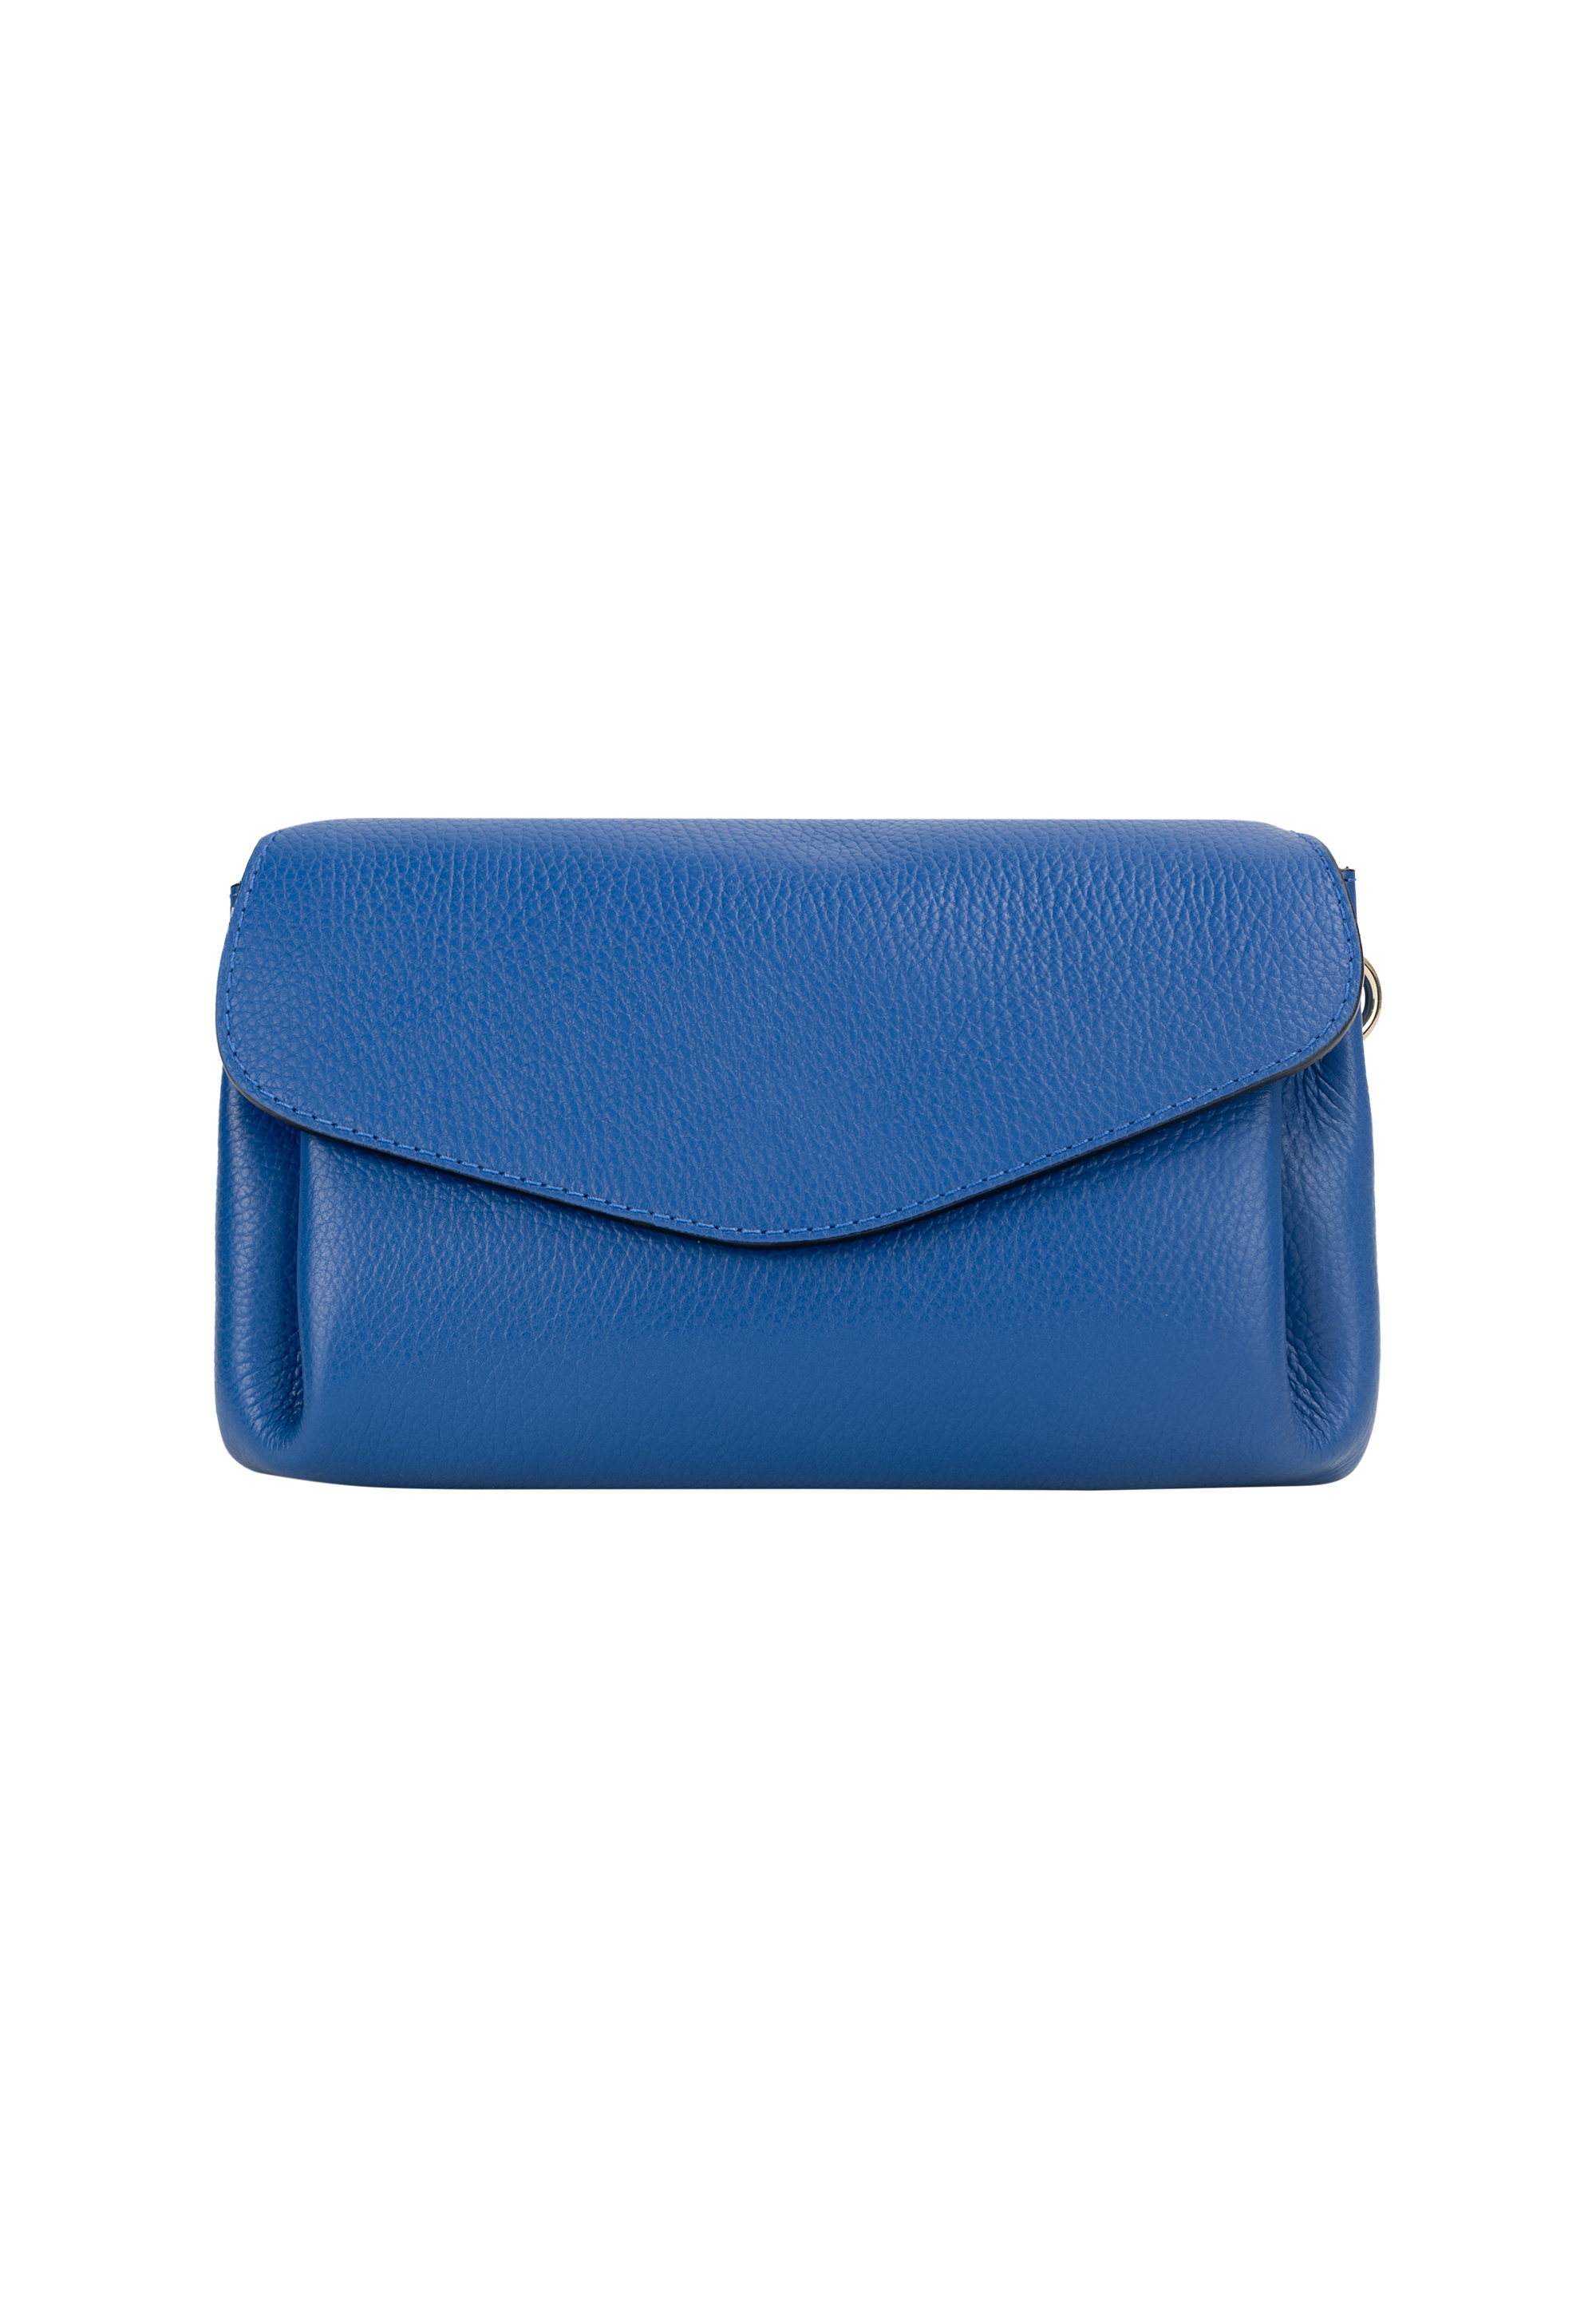 Сумка через плечо NAEMI Handtasche, цвет Azurblau сумка через плечо naemi handtasche цвет dunkeltaupe